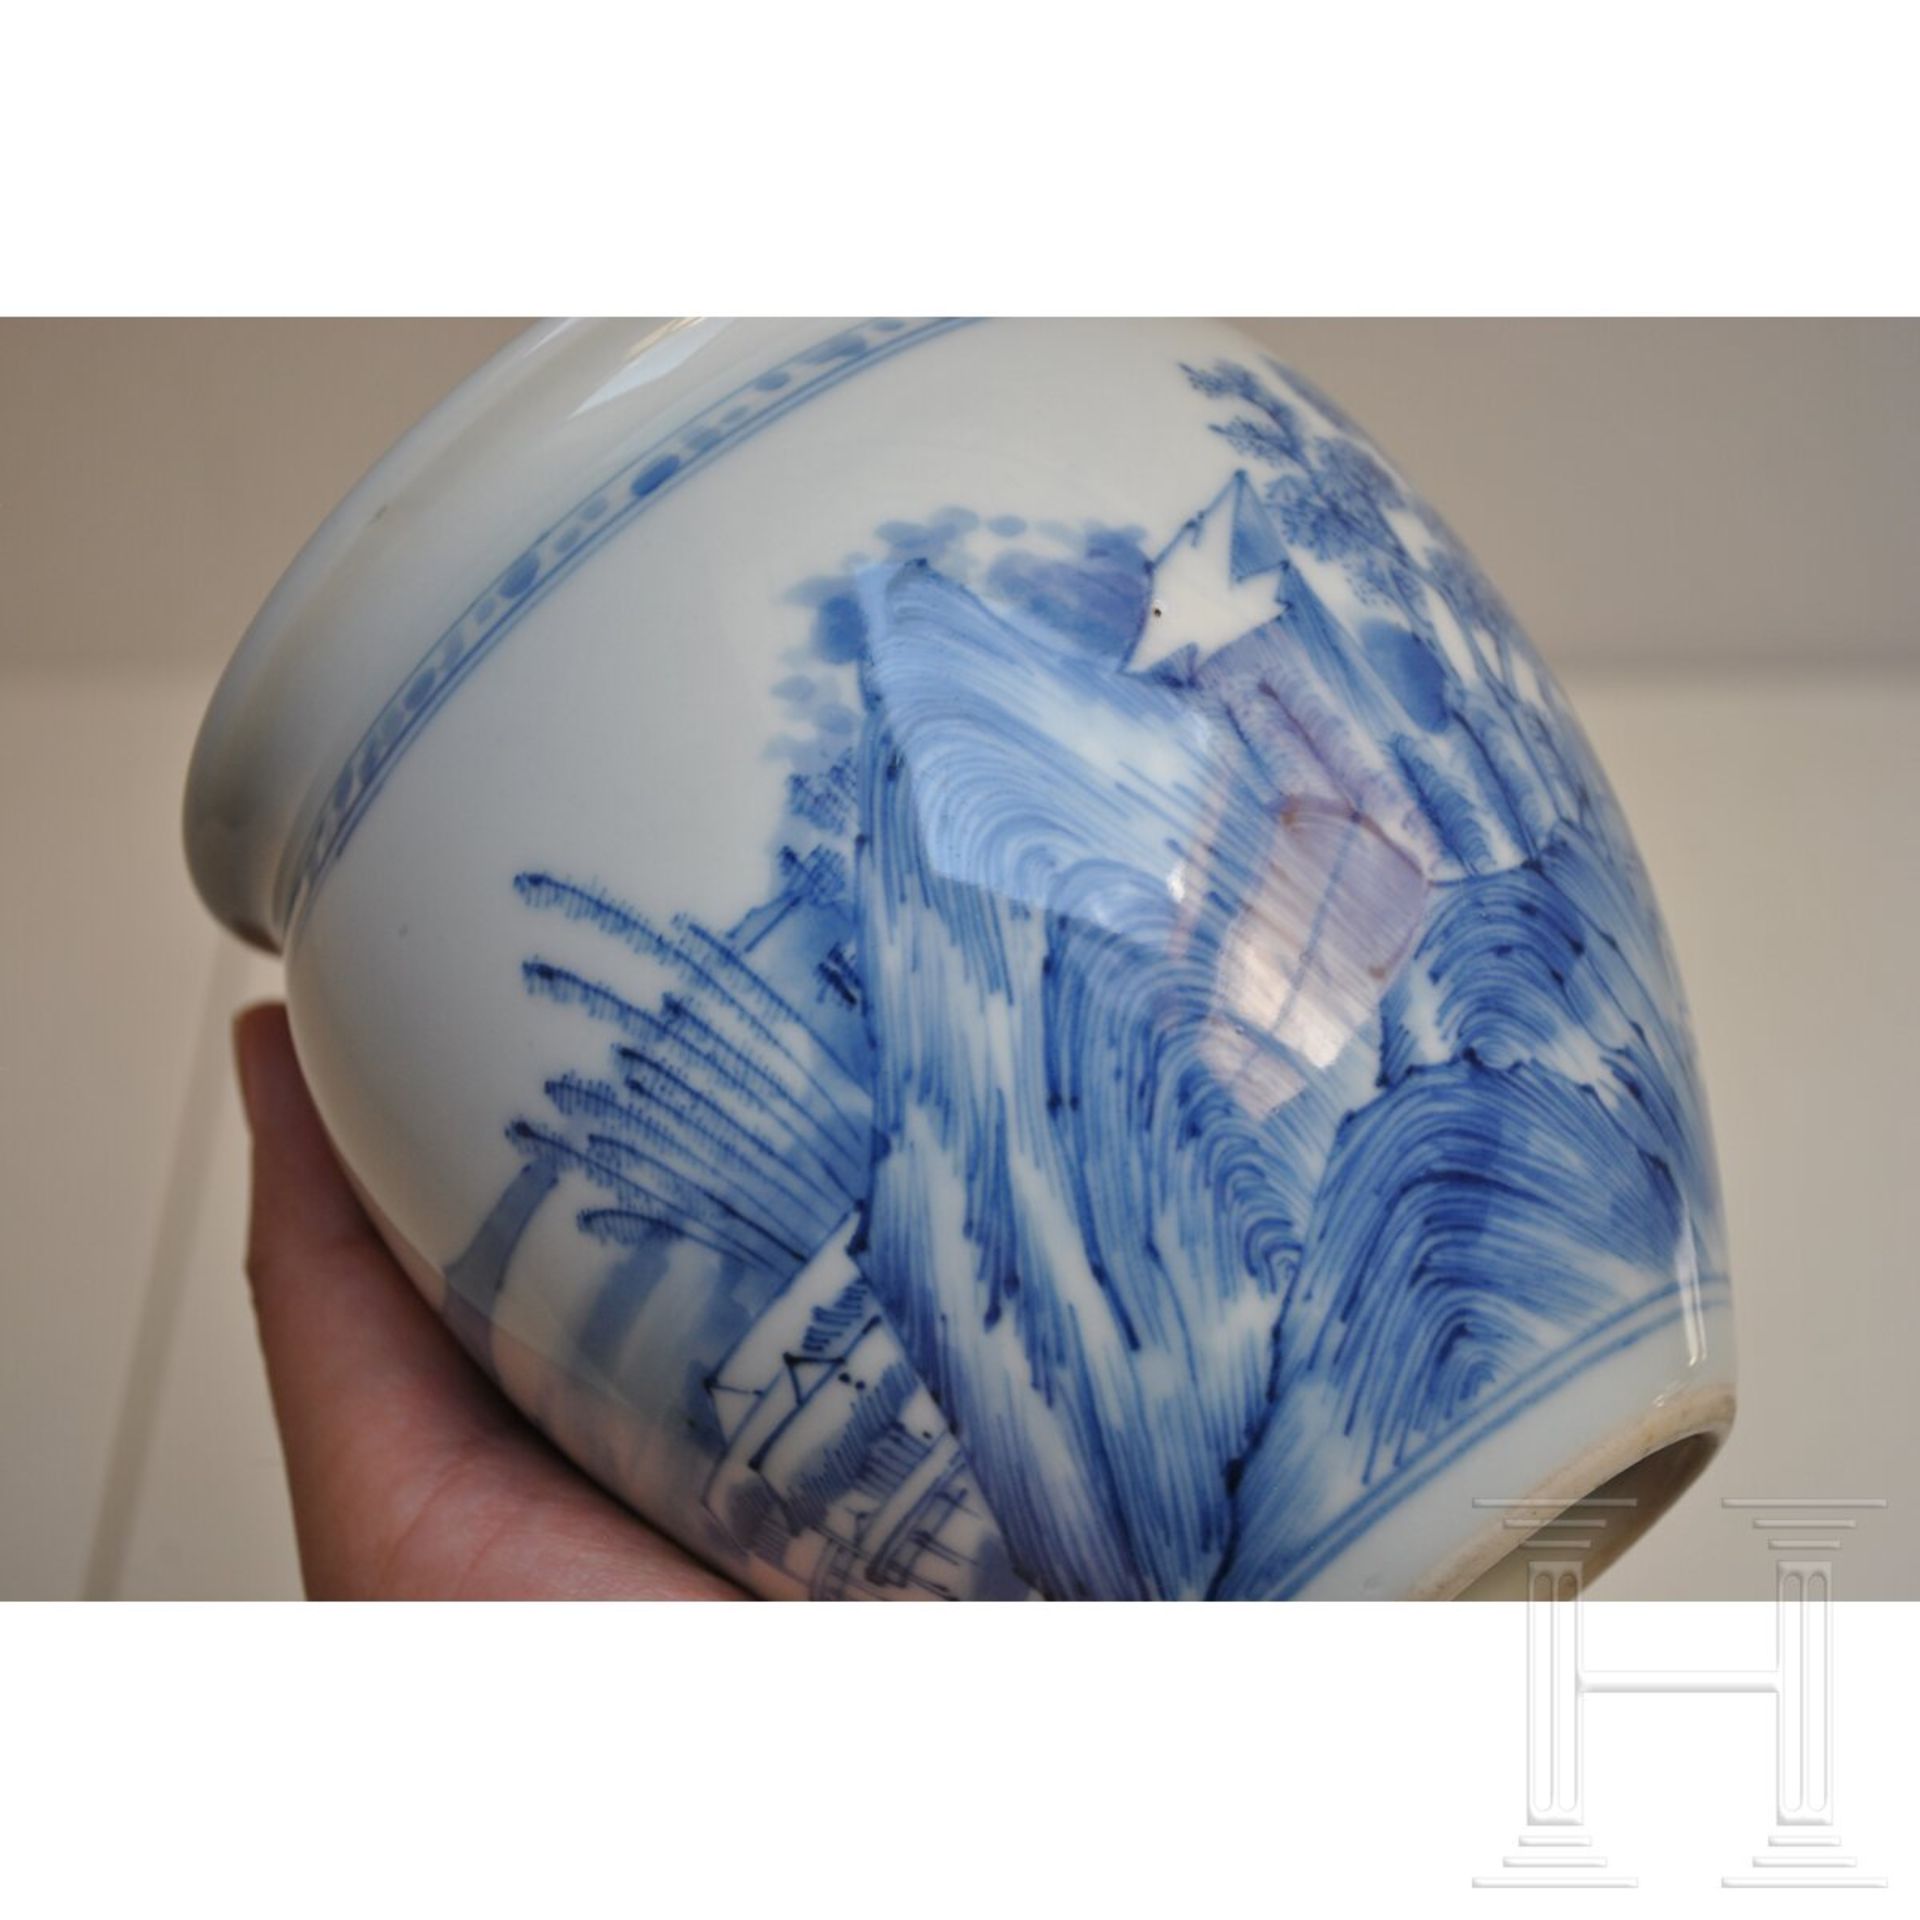 Blau-weiße Vase mit Seenlandschaft, China, wohl Kangxi-Periode (18. Jhdt.) - Bild 6 aus 15